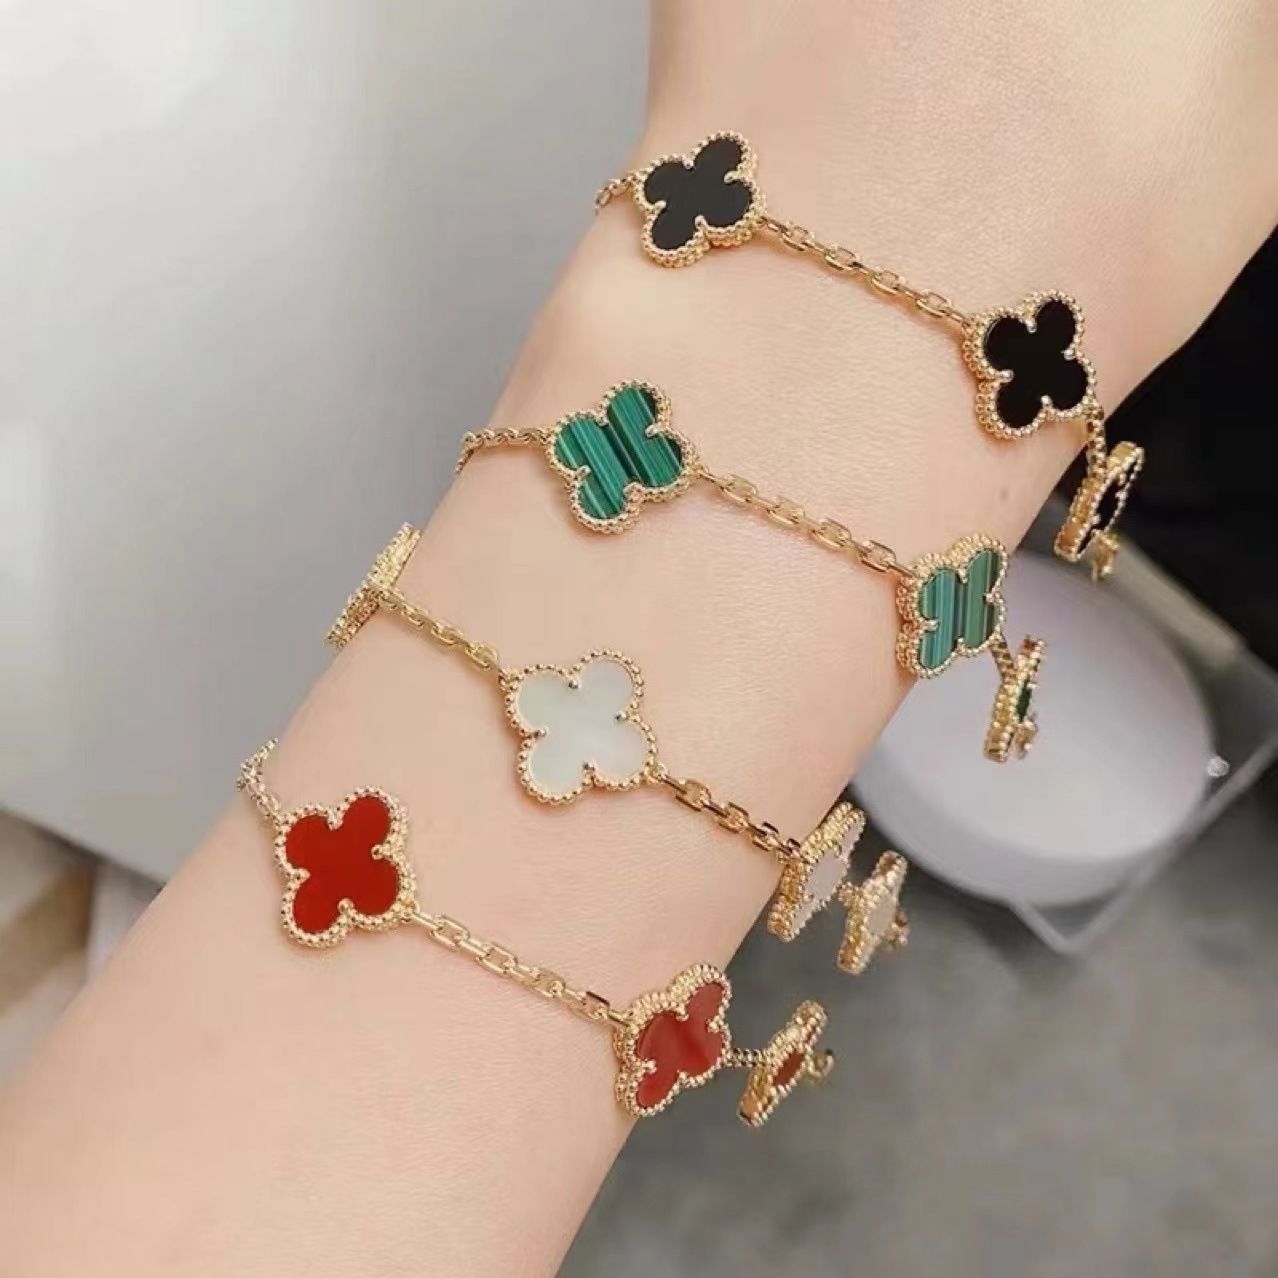 18k Gold Five-Flower Bracelet with Four-Leaf Clover Design for Women's  Fashion